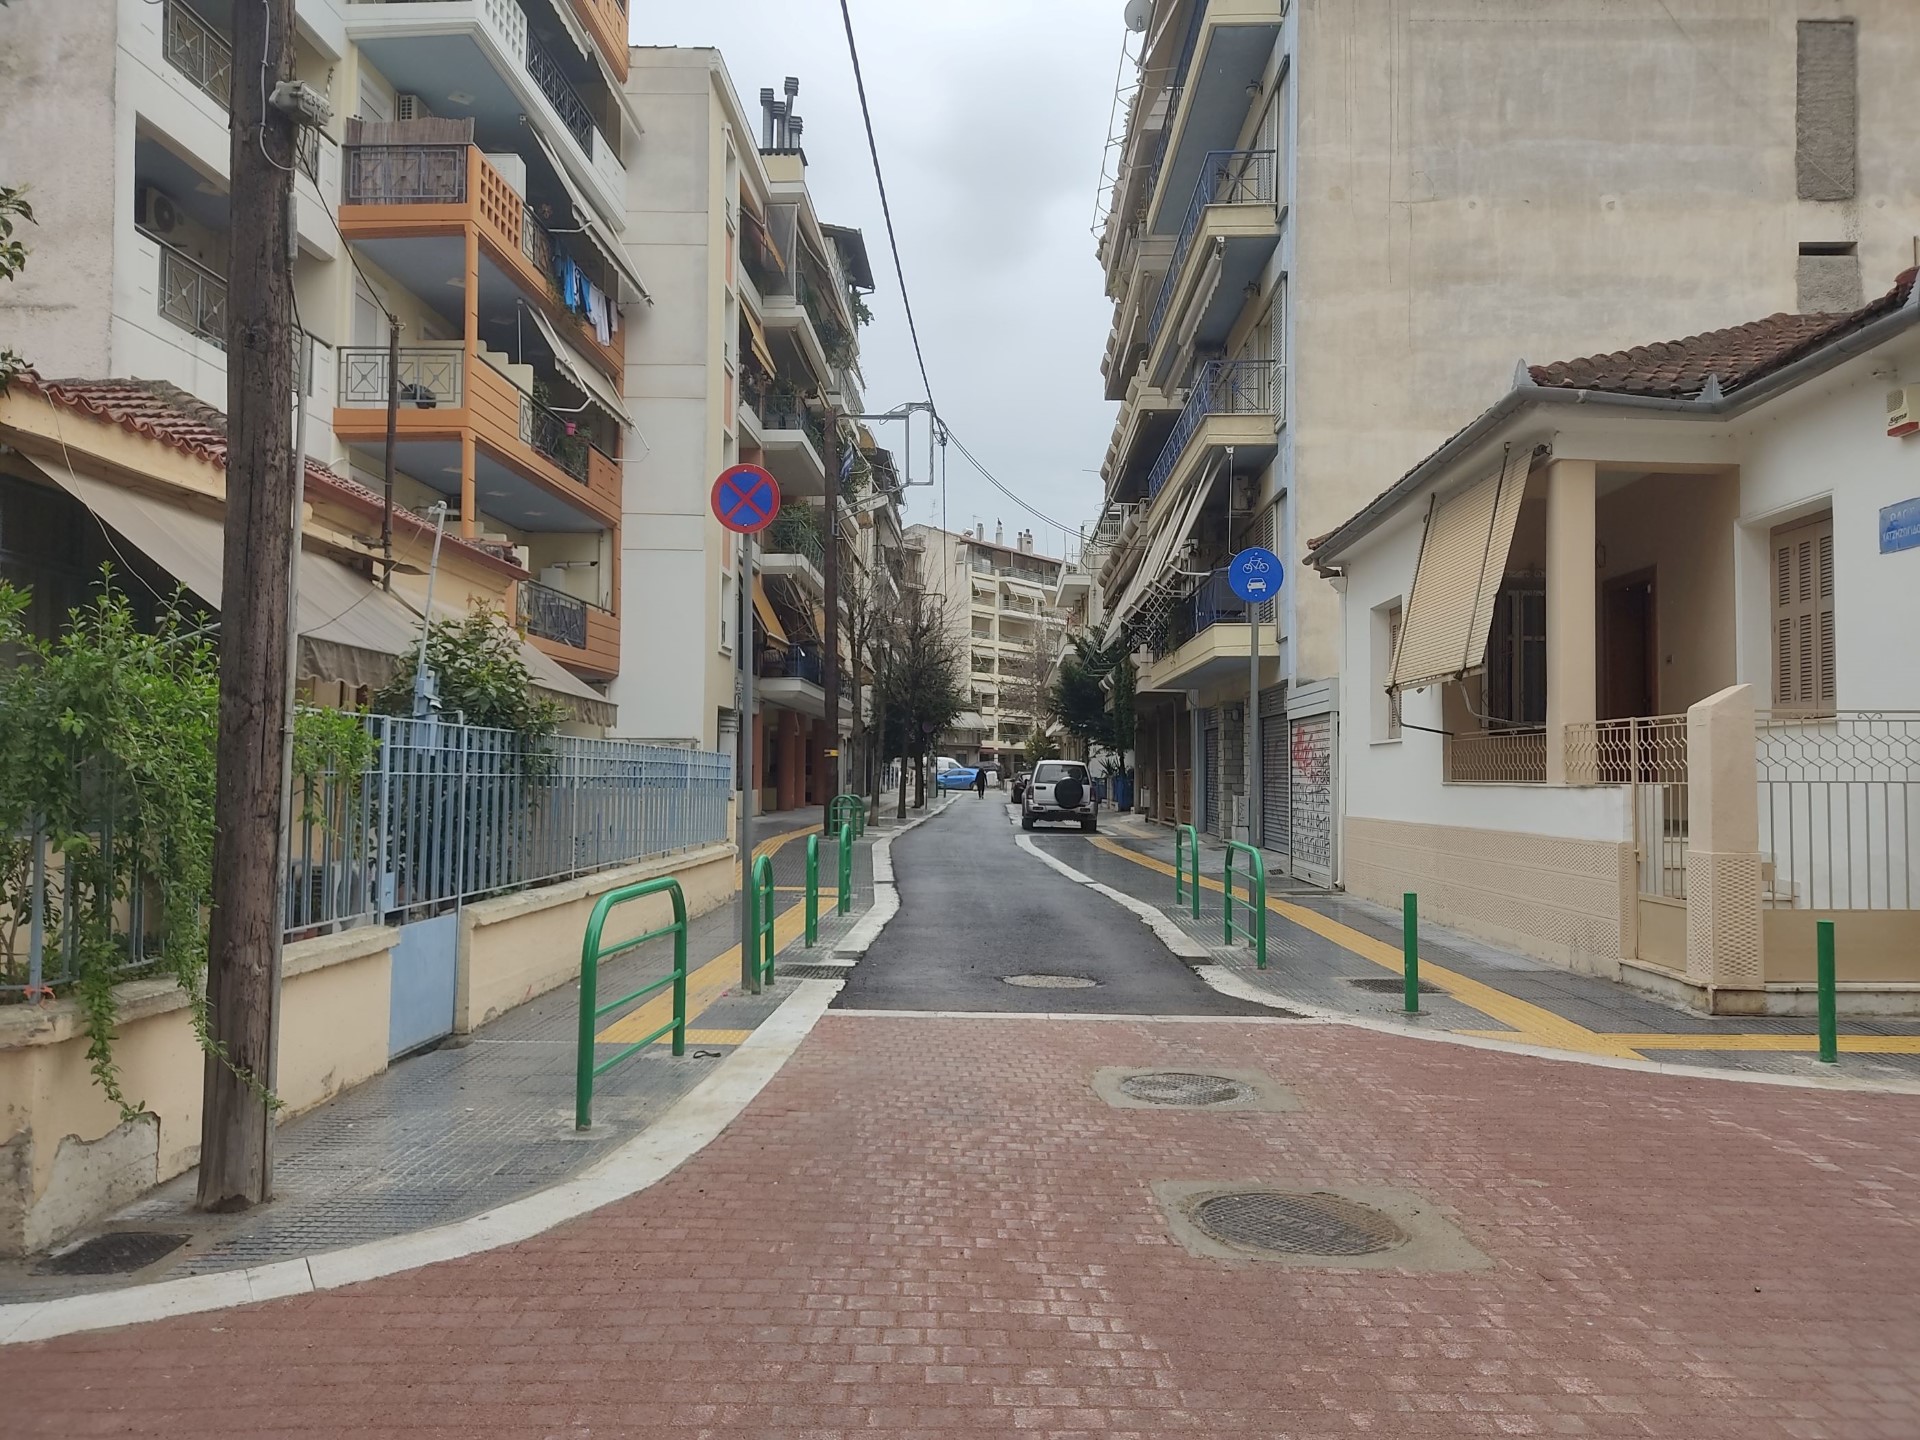 Δήμος Λαρισαίων: Με έργα στην οδό Αιόλου συνεχίζεται το δίκτυο πεζοδρόμων και ποδηλατικών διαδρομών